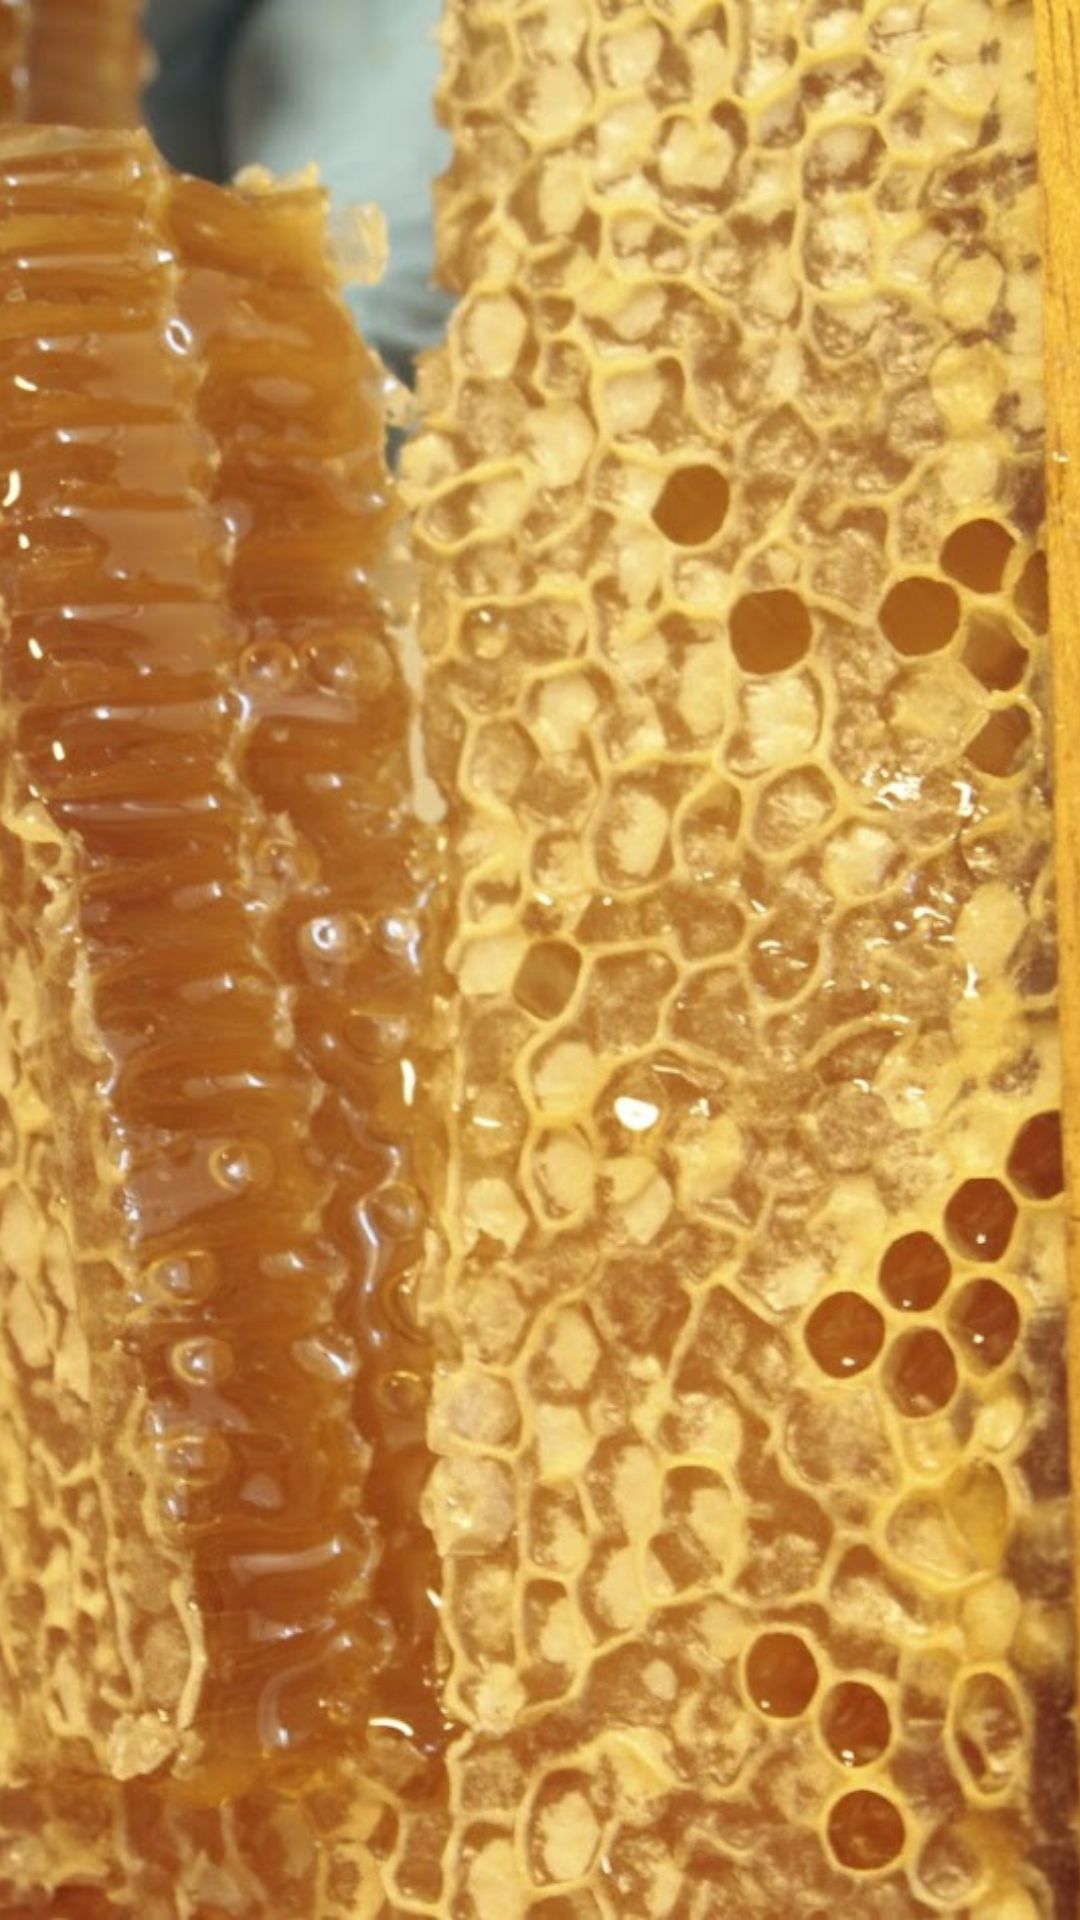 Qual a melhor condição ambiental para a colheita de mel?